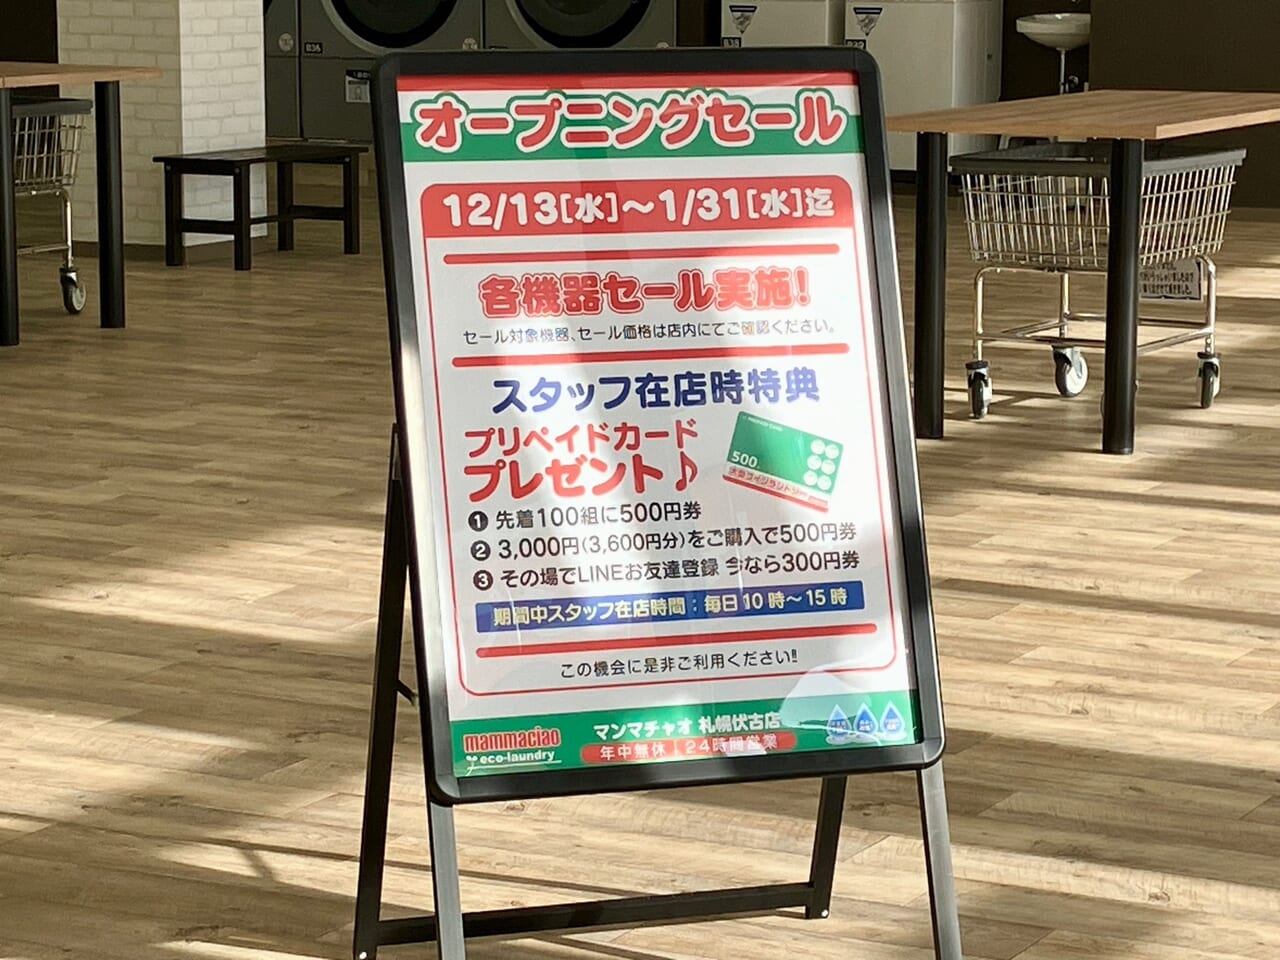 メガサイズのコインランドリーが伏古に登場！「マンマチャオ 札幌伏古店」がオープンセール中です！